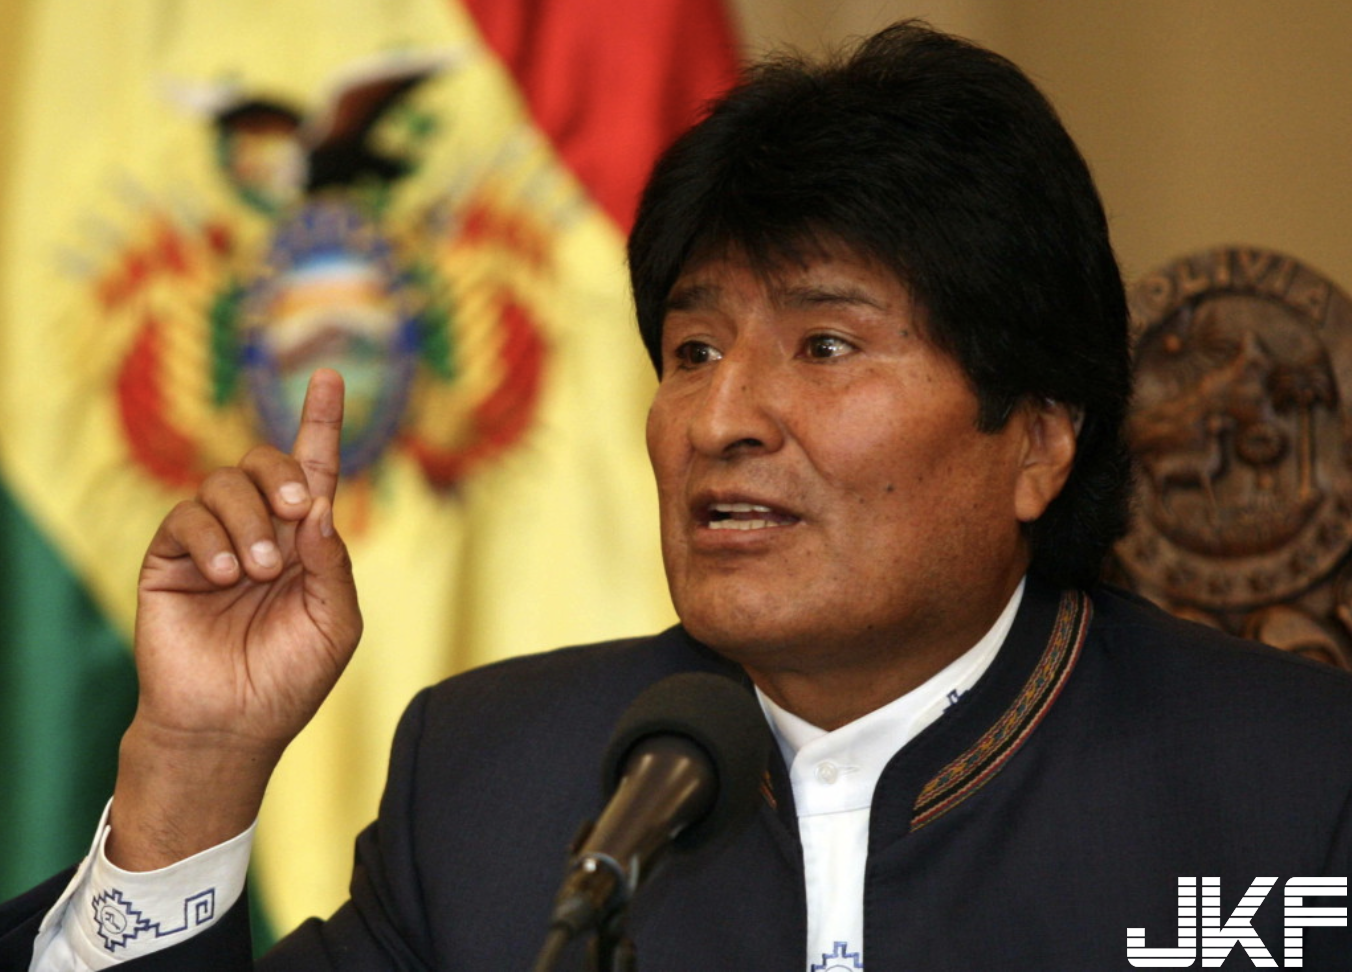 【蜗牛扑克】玻利維亞總統94狂！出席法庭辯論會看謎片舒壓～意外被響徹全場的高潮呻吟聲出賣……